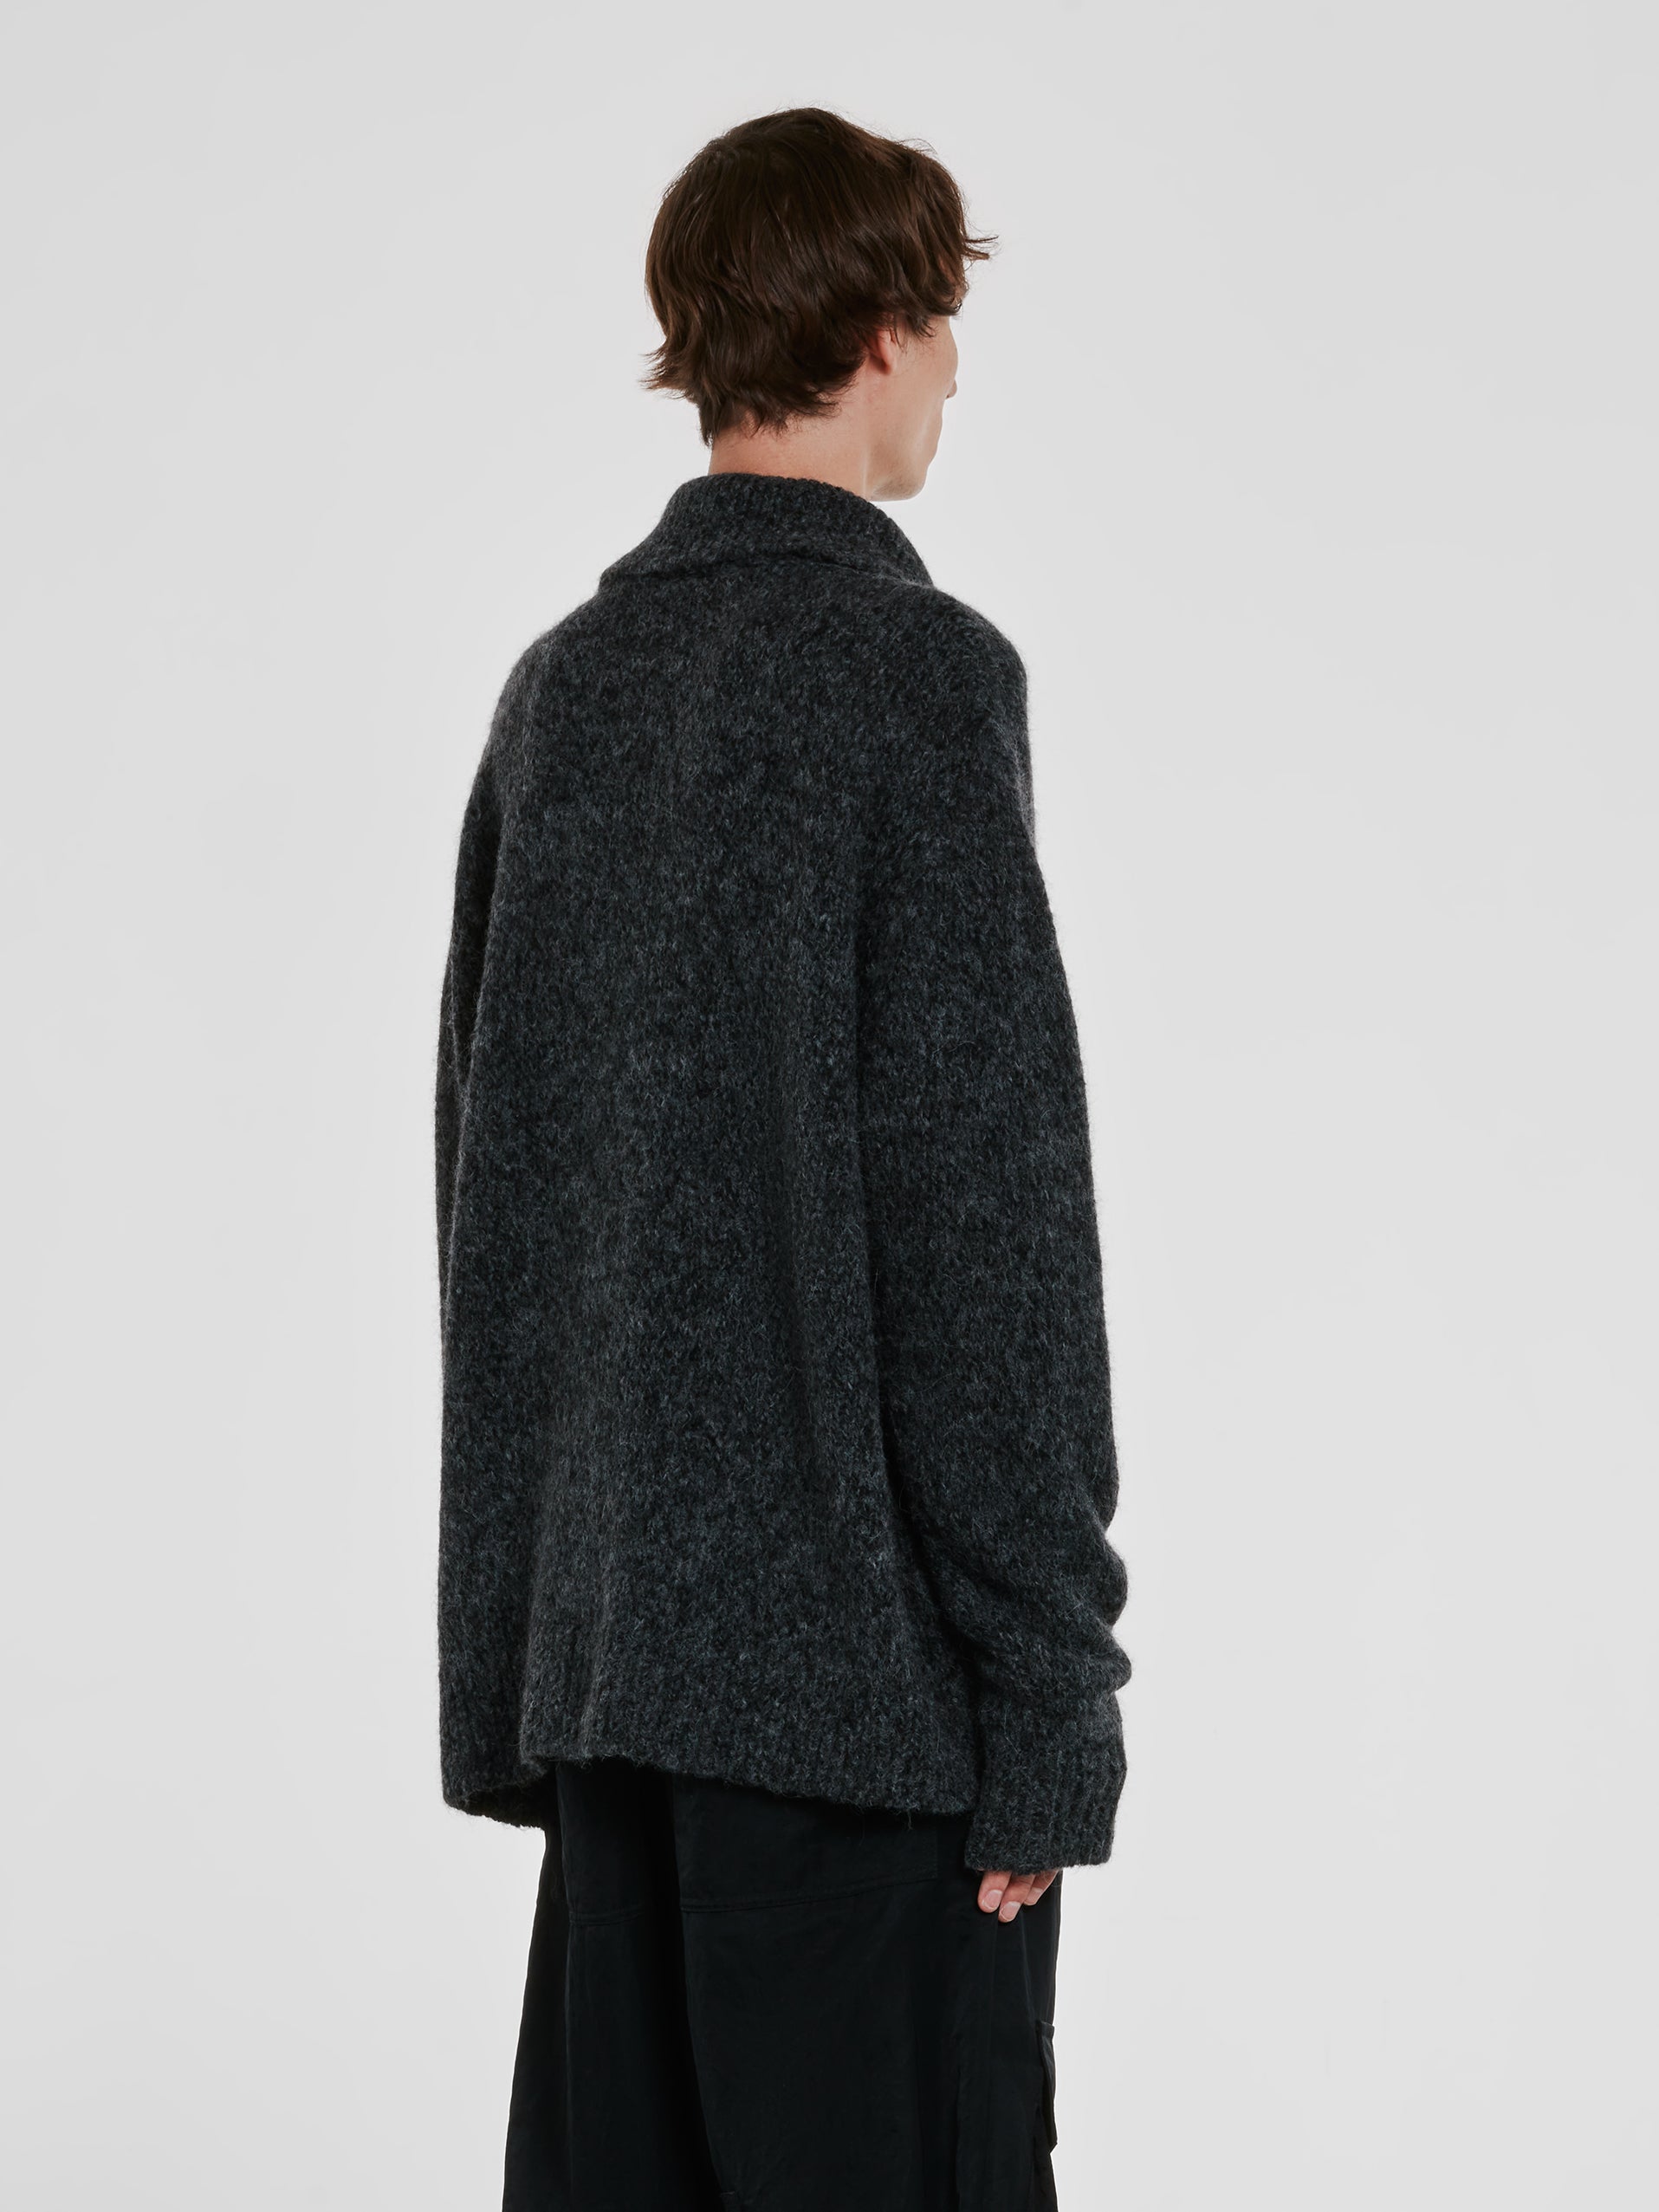 Dries Van Noten - Men’s Collared Sweater - (Grey) view 3